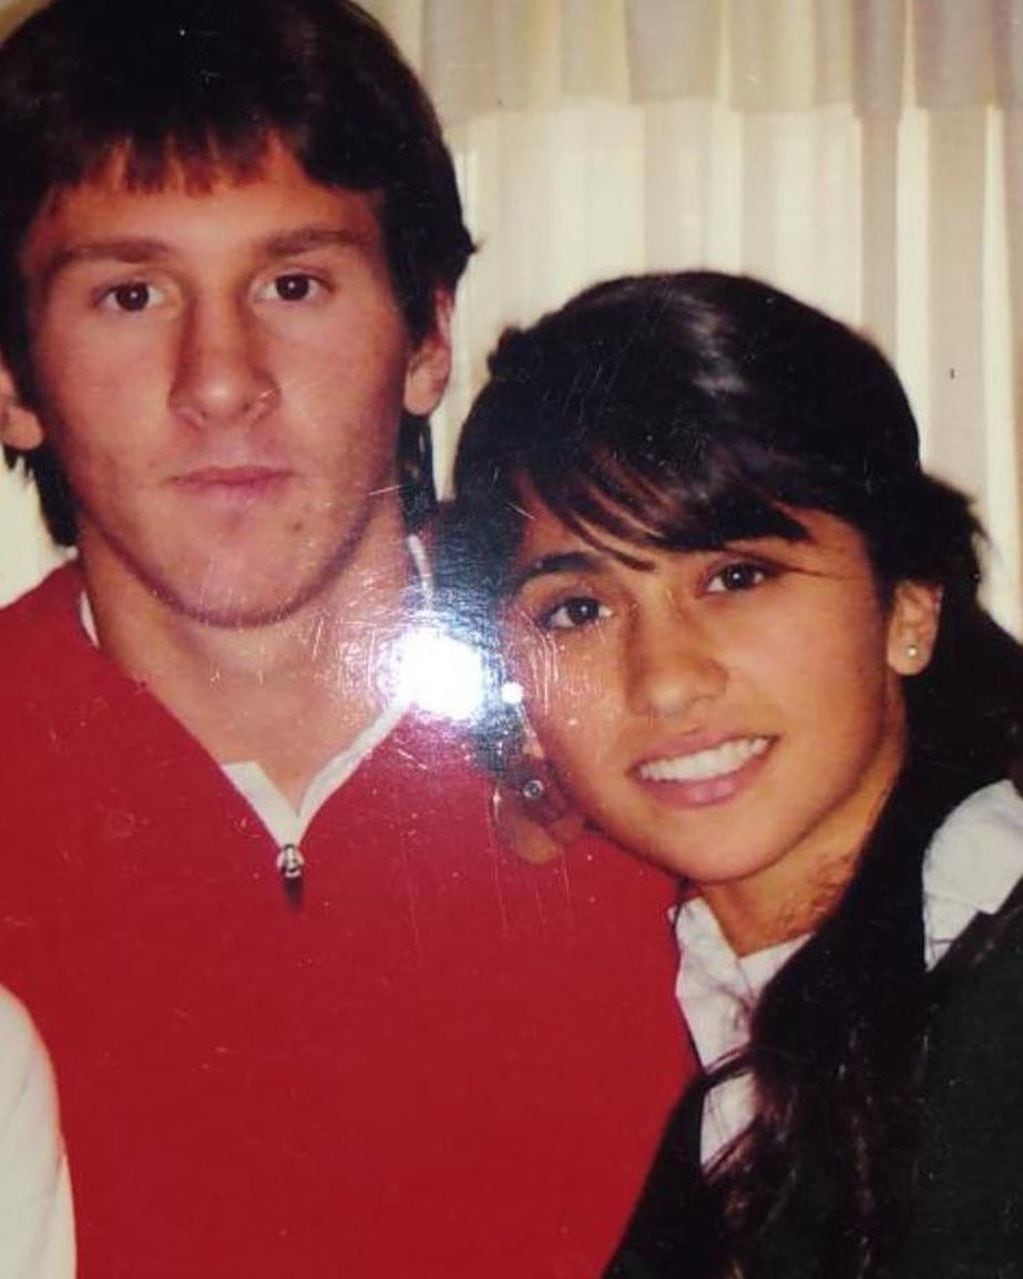 Foto inédita de los inicios del romance de Lionel Messi y Antonela Roccuzzo